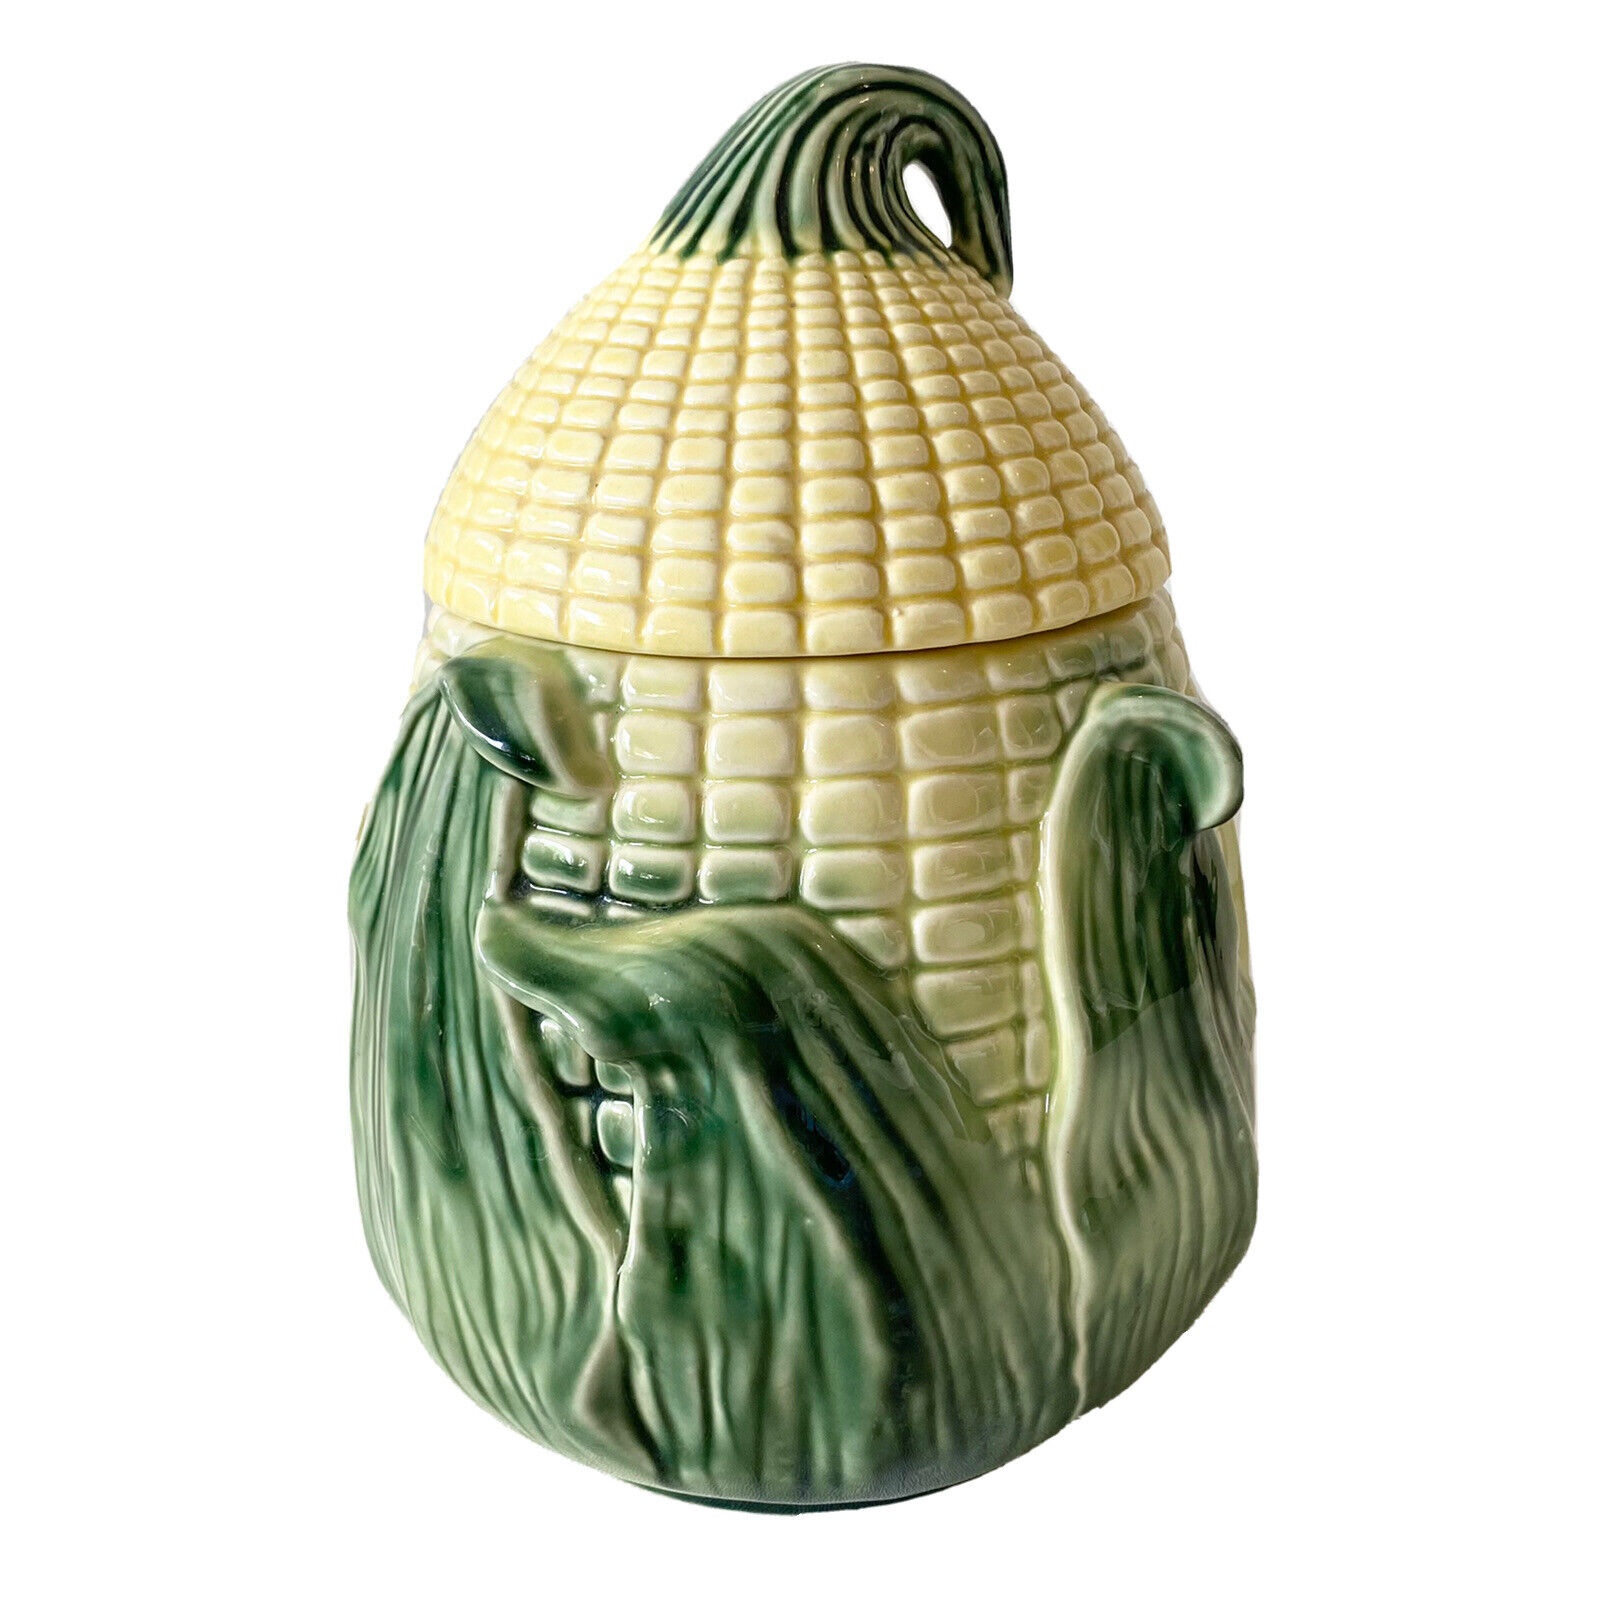 Vintage Stanfordware Stanford Pottery Corn Cob Cookie Jar Cannister 9”